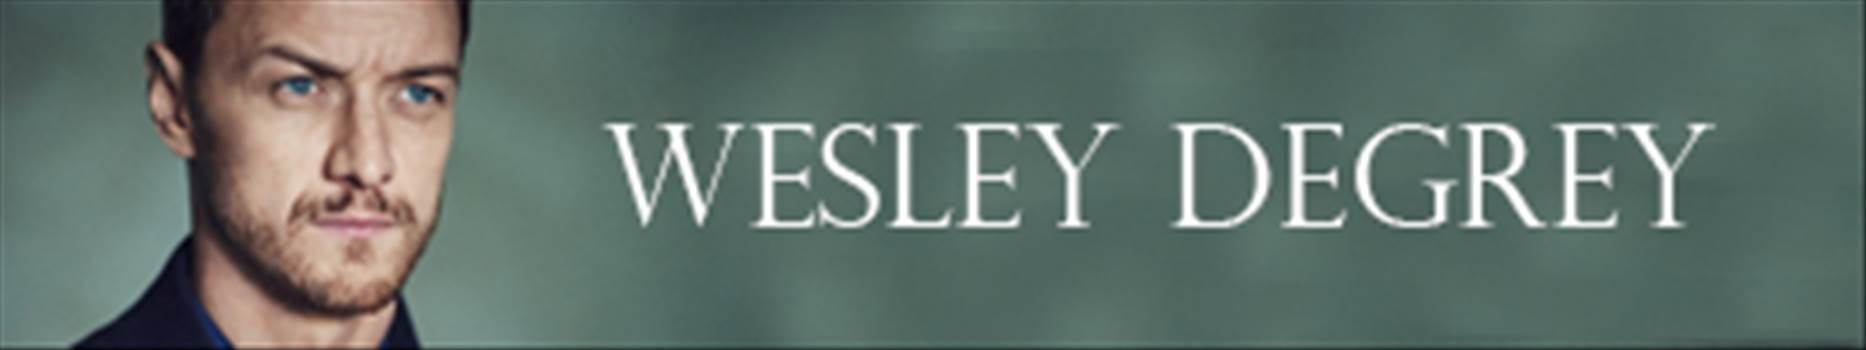 wesley-tracker.jpg - 